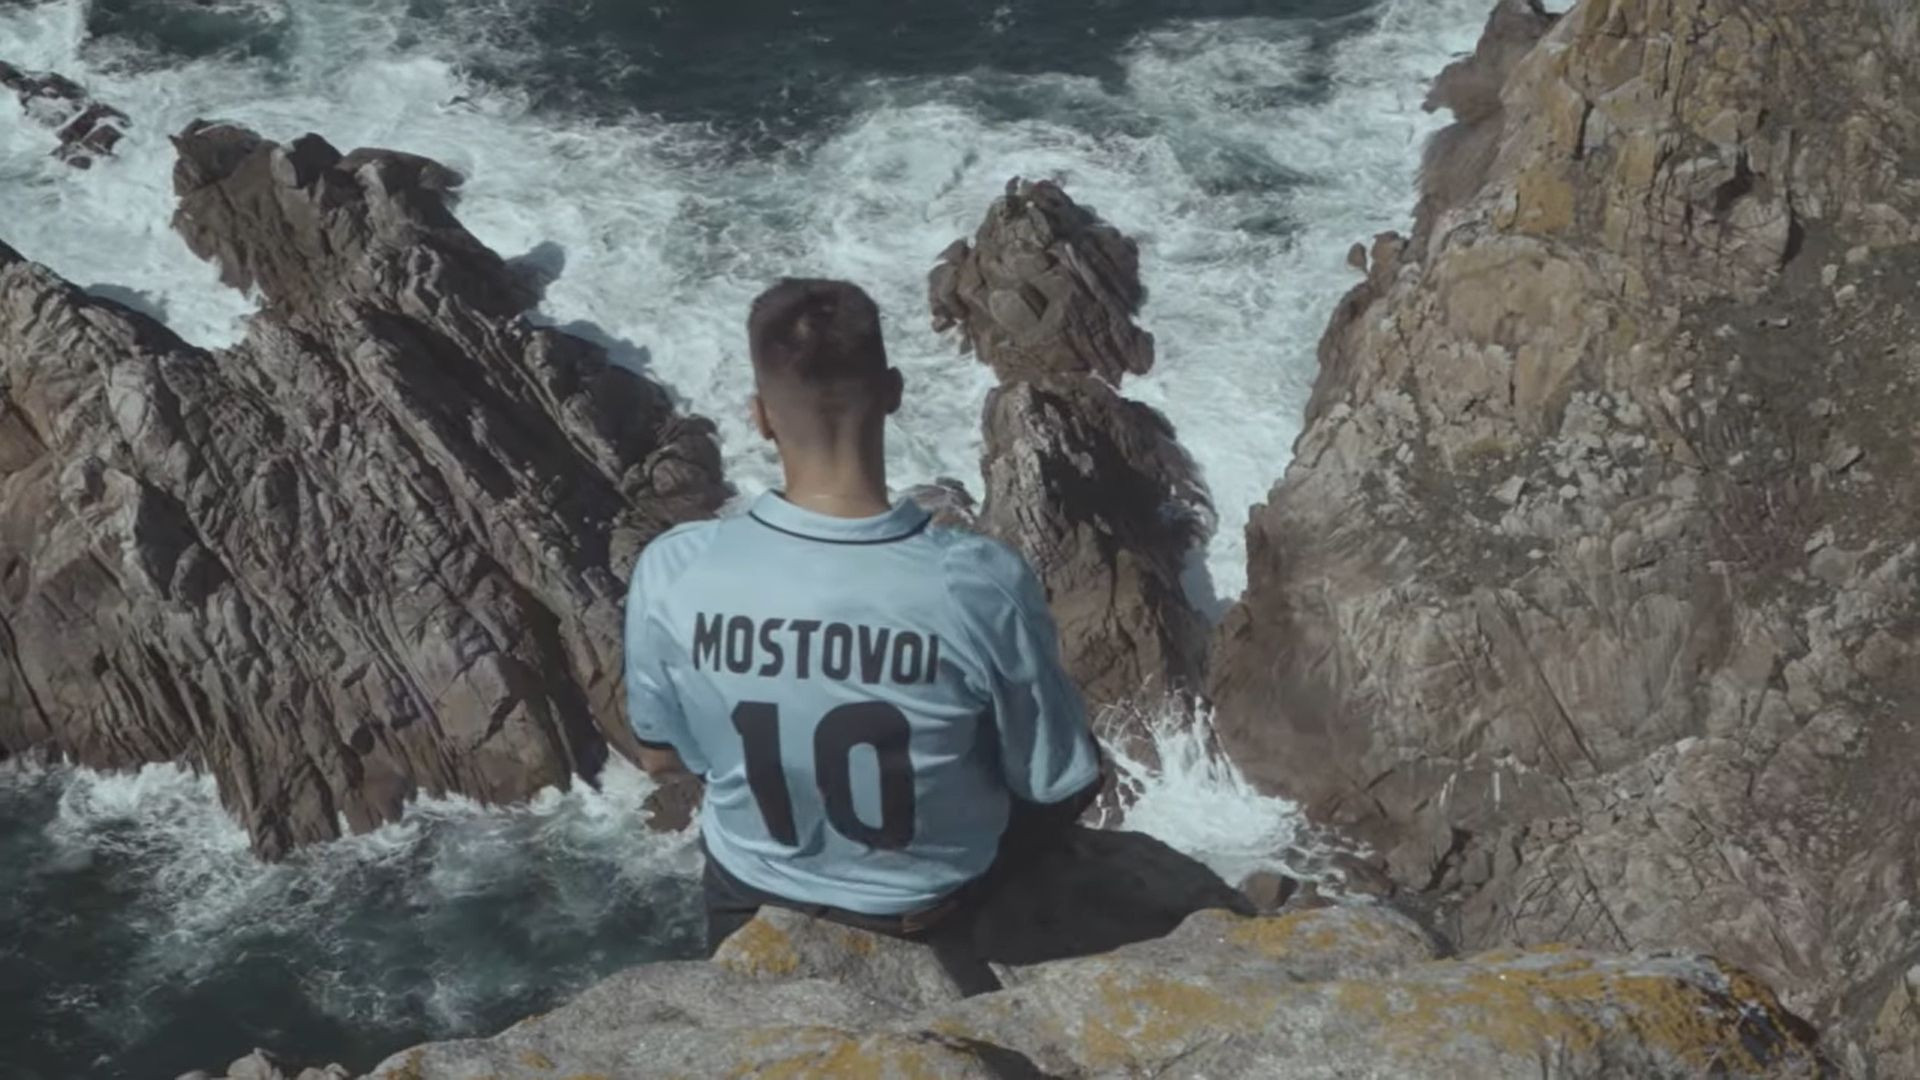 Dirty Suc luce una de las míticas camisetas de Alexander Mostovoi en el videoclip de la canción homónima